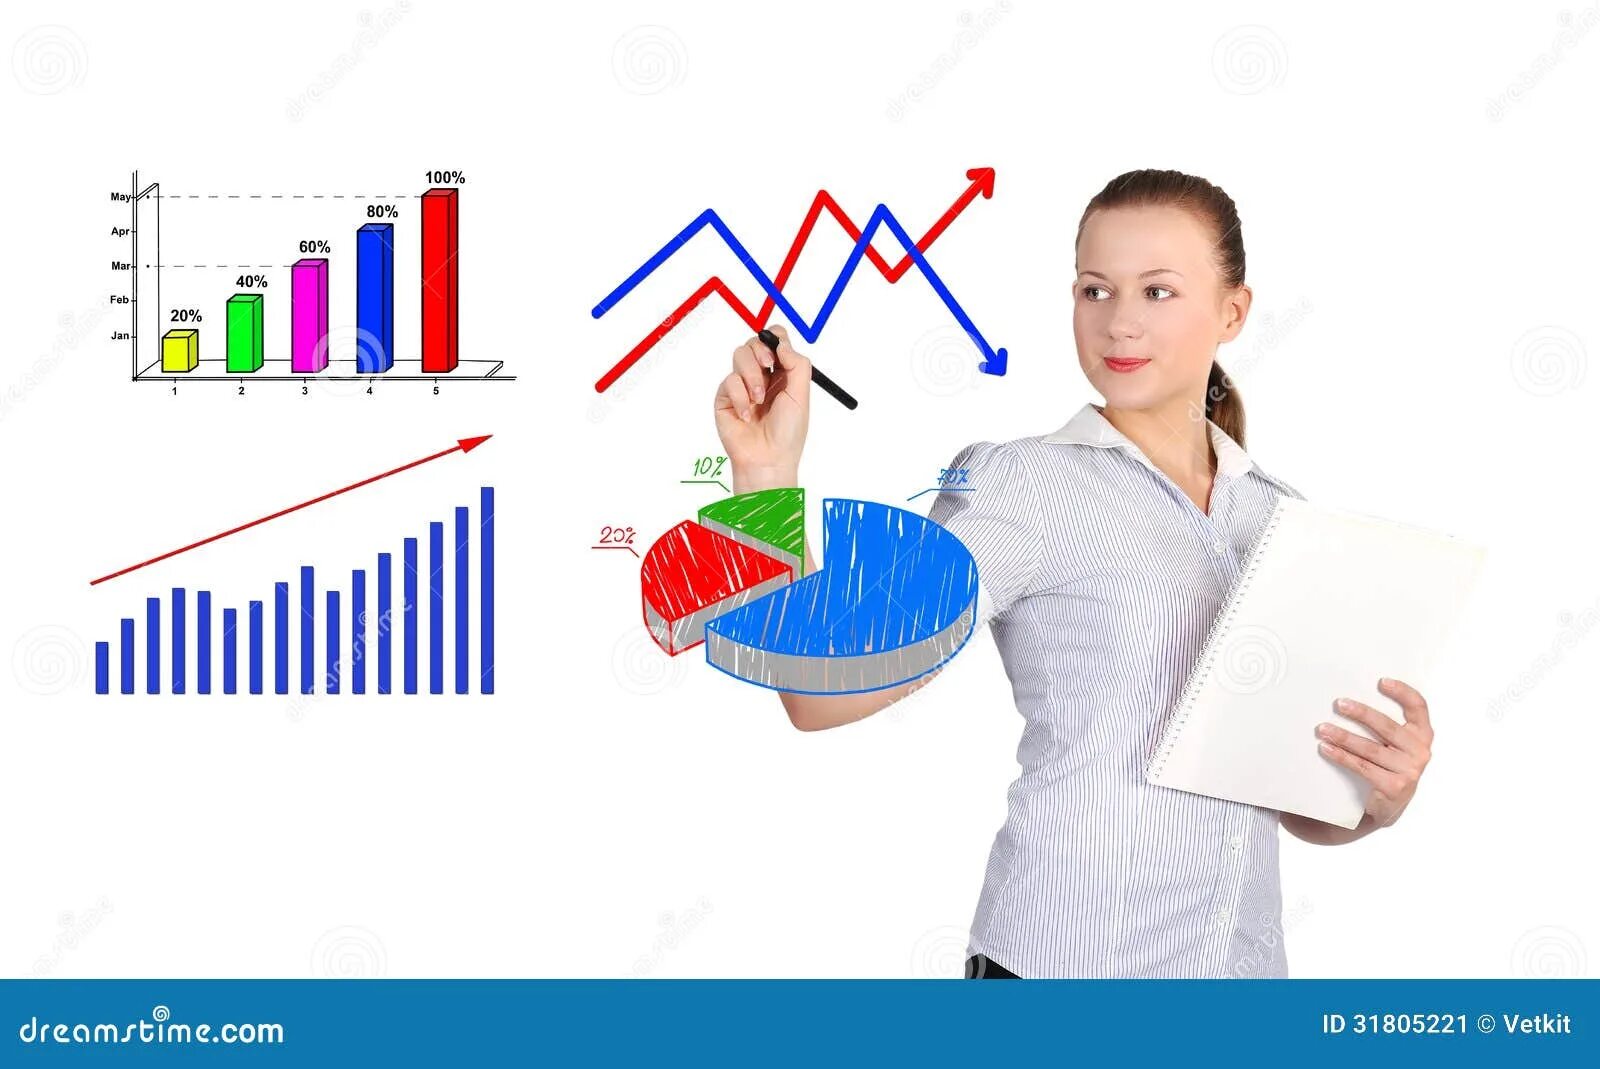 Маркетинговое изучение спроса. Изучение спроса картинка. Девушка с диаграммой. Изучение спроса на услуги. Человек с диаграммами рисунока.